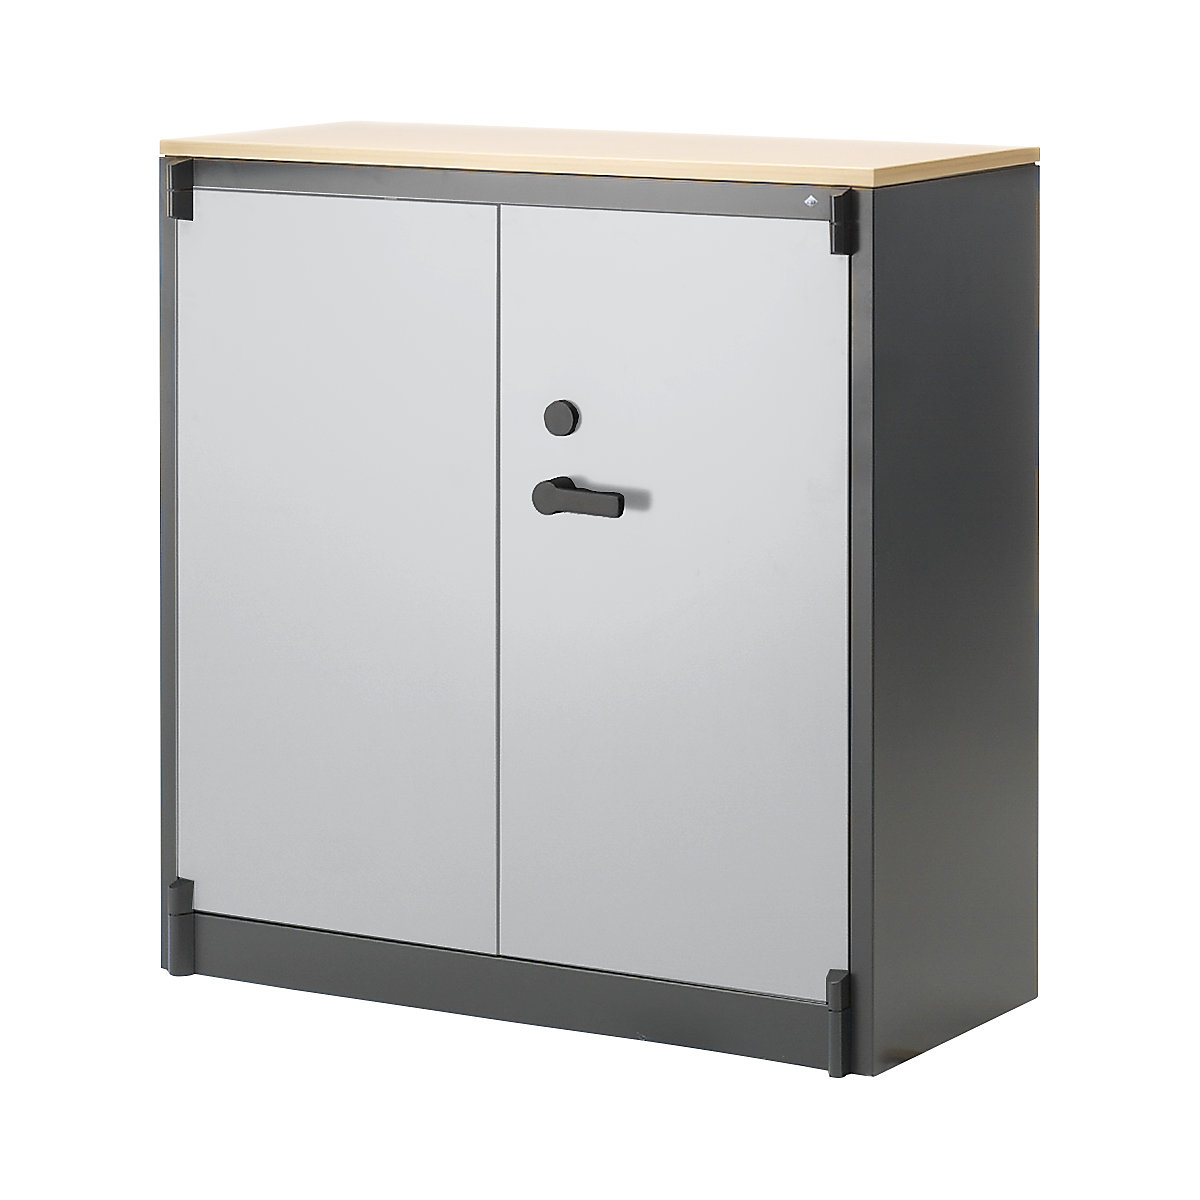 Steel cupboard, fireproof – C+P, DIN 4102 compliant, HxWxD 1226 x 1200 x 500 mm, black grey/light grey-15